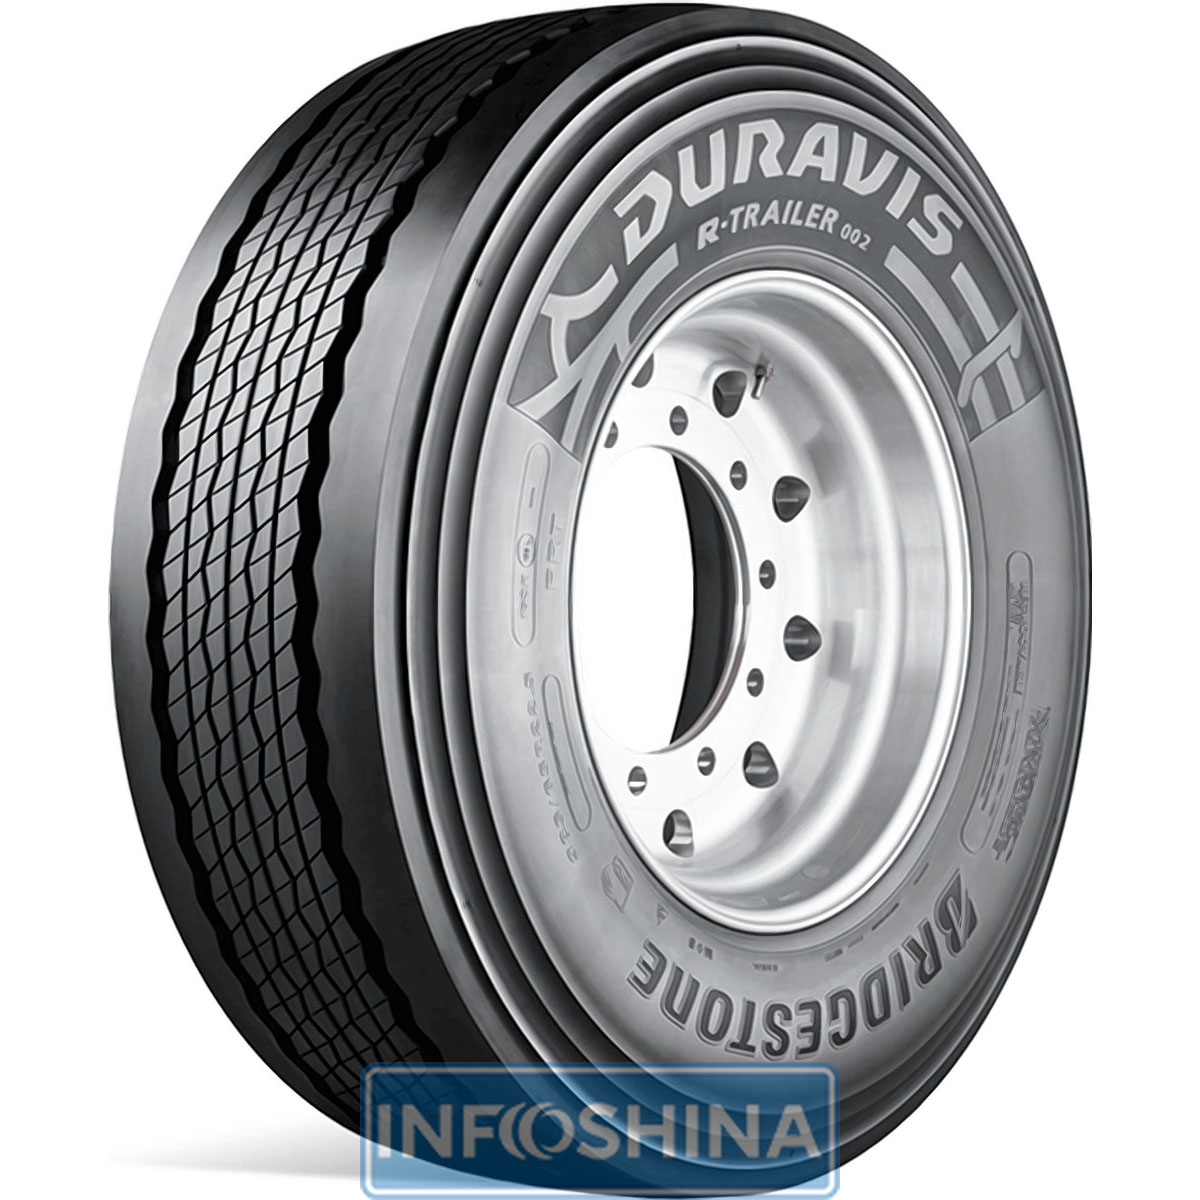 Купить шины Bridgestone Duravis R-Trailer 002 (прицепная ось) 385/55 R22.5 160K